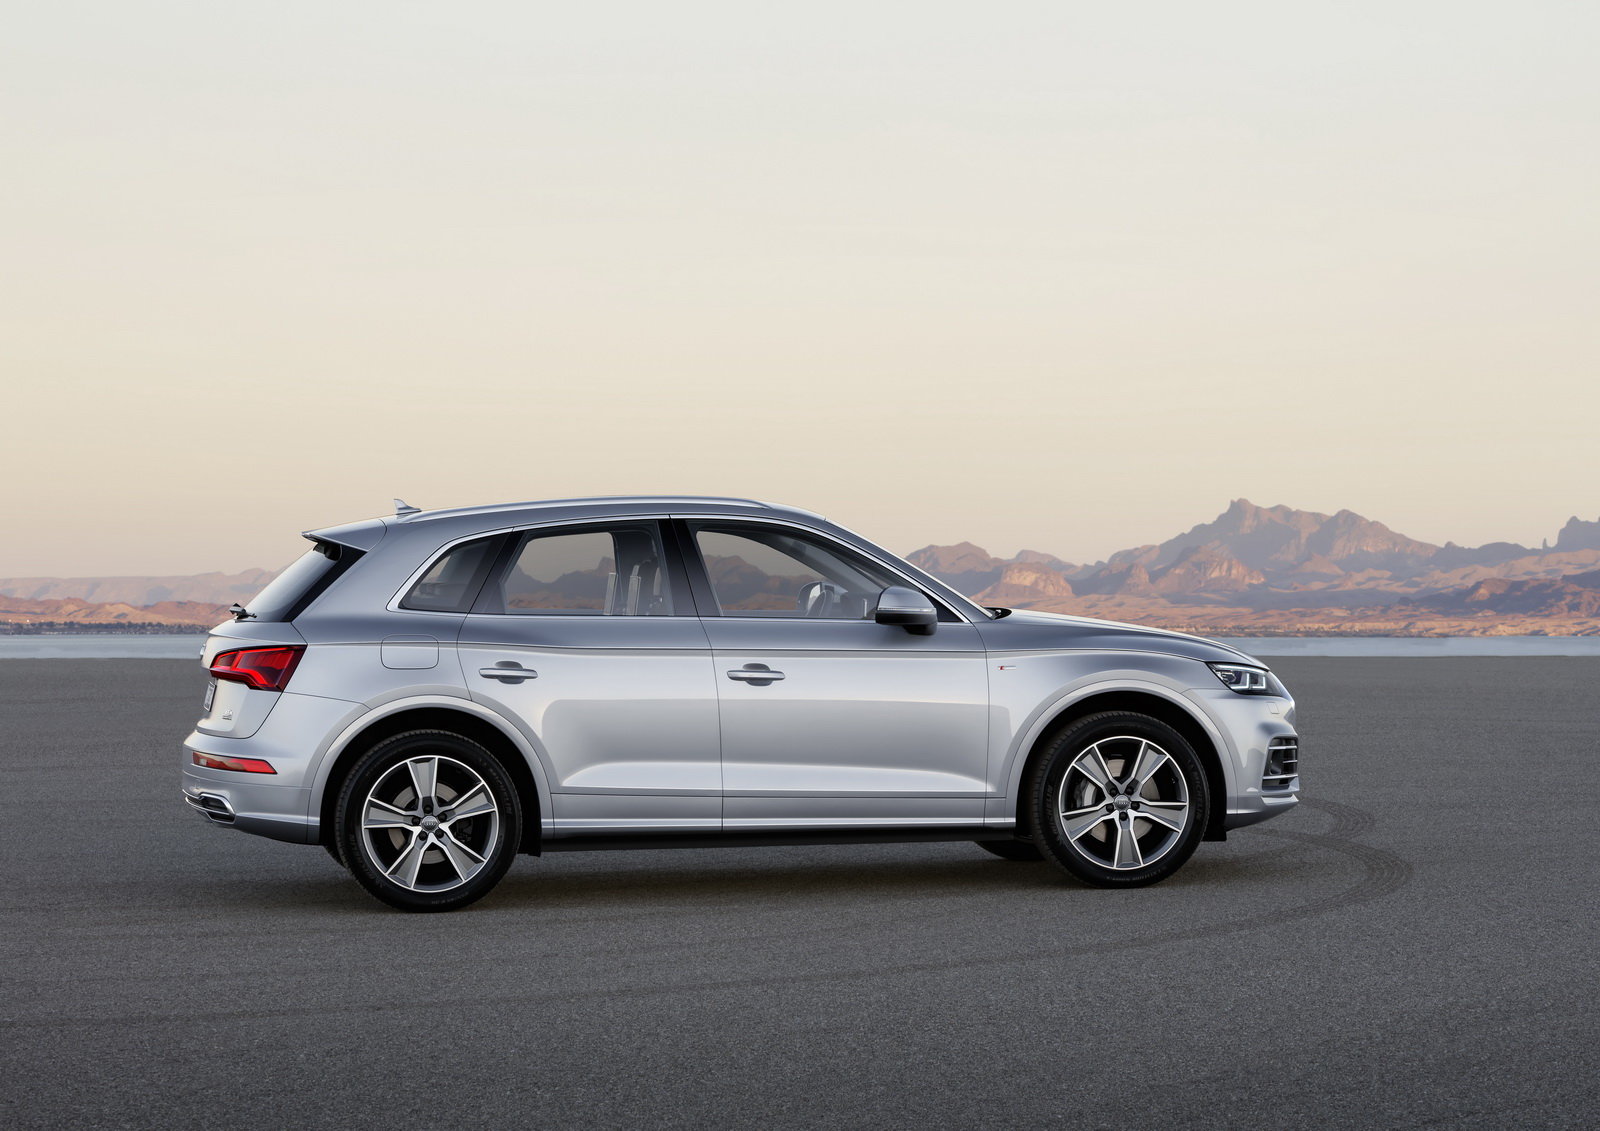 Audi Q5 se představuje ve druhá generaci, ta je větší a celkově vyspělejší.